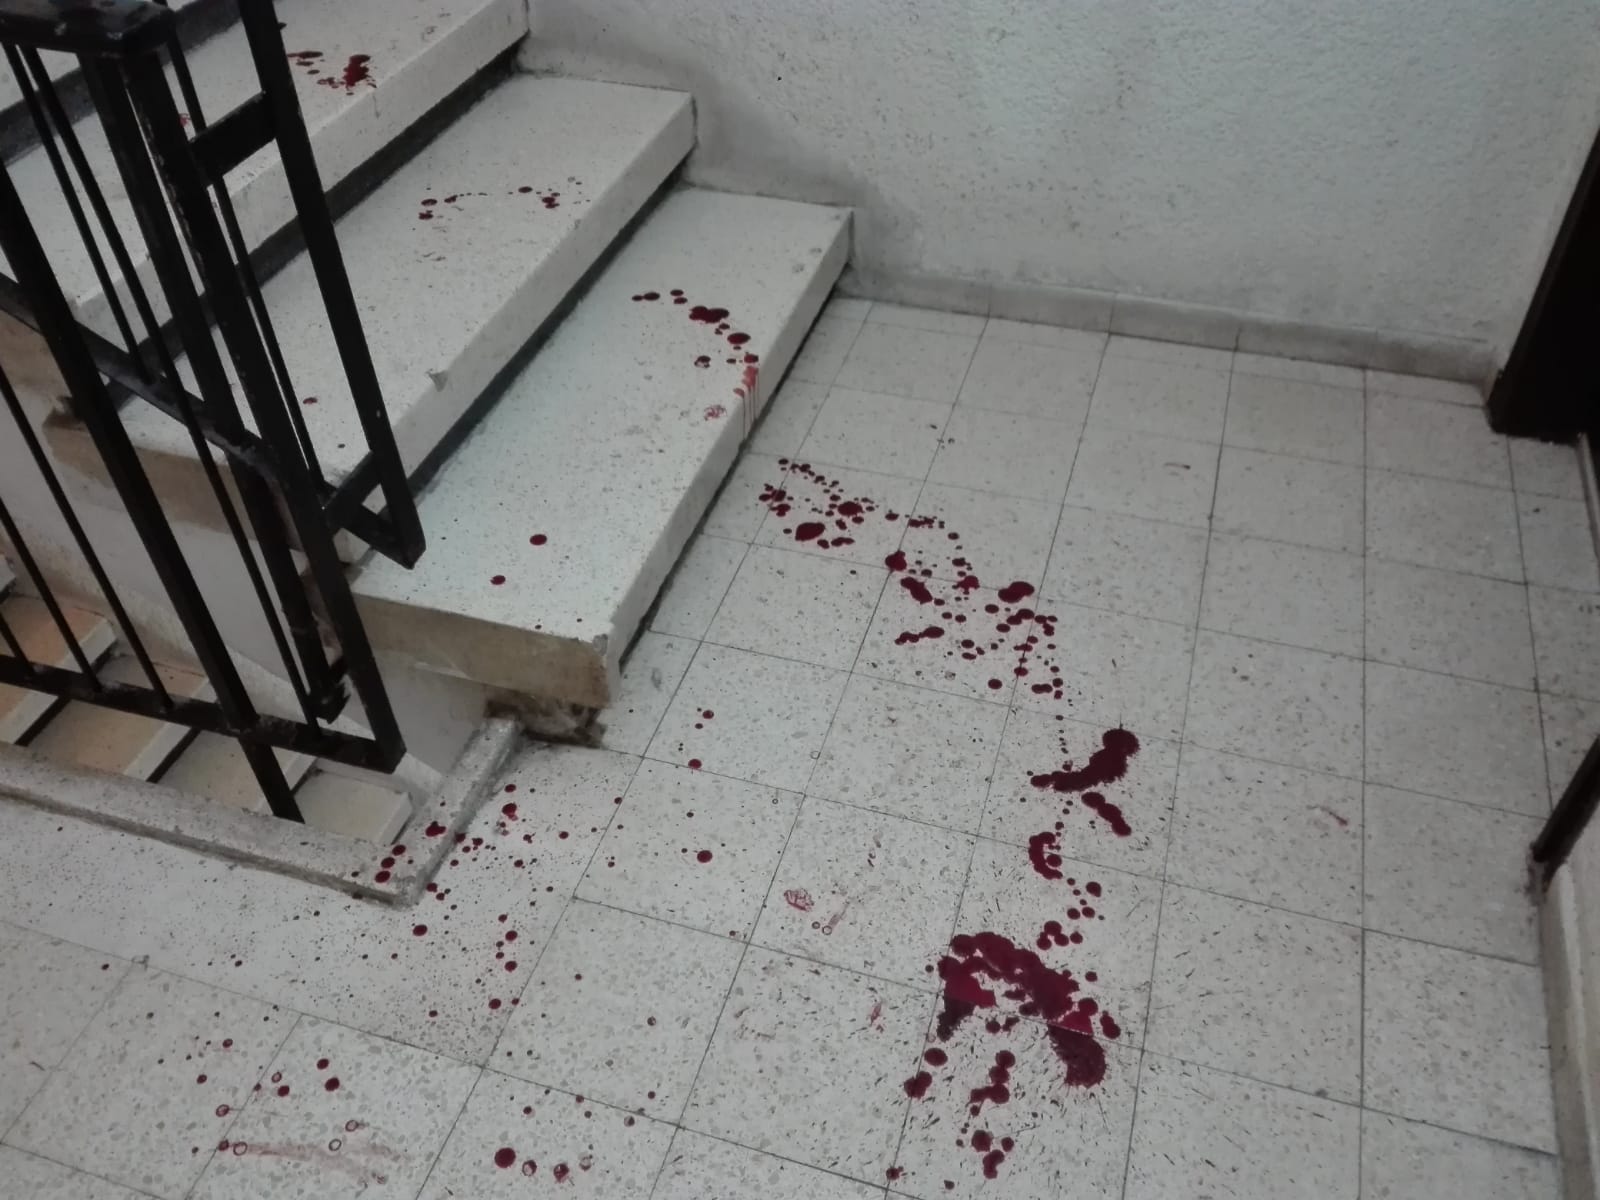 כתמי הדם בחדר המדרגות (צילום: שמואל סרדינס)